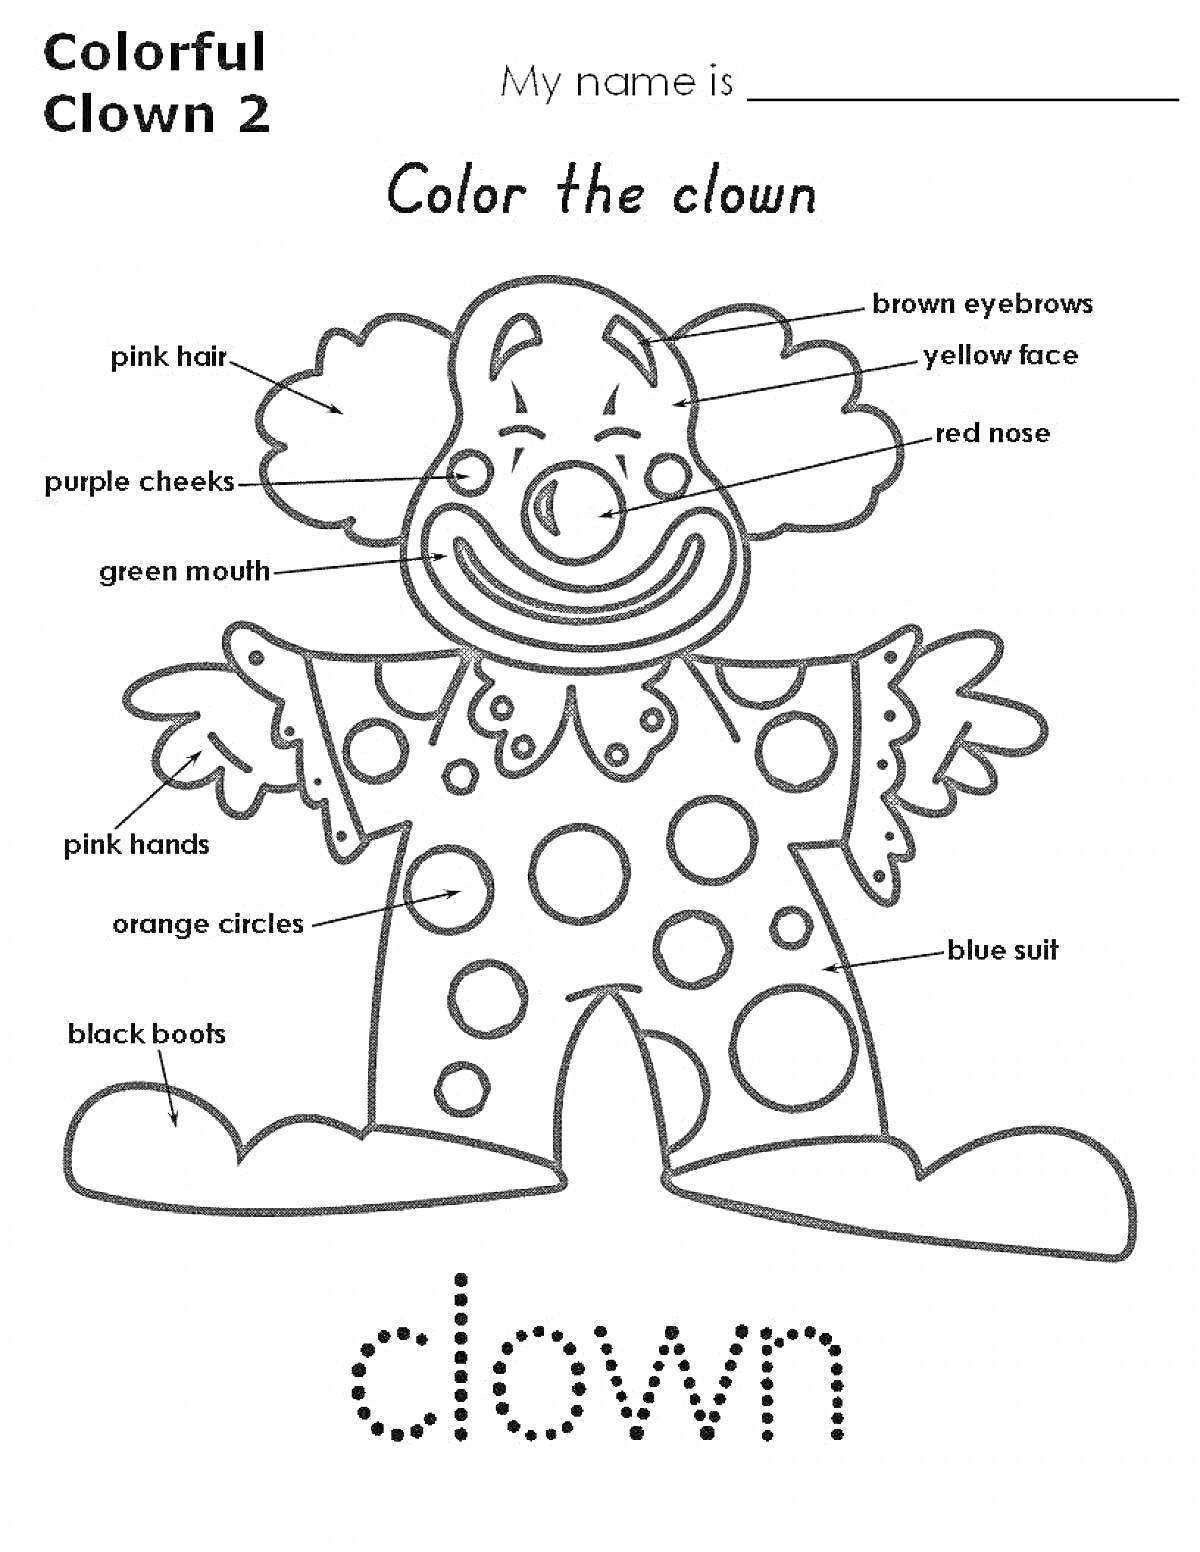 Раскраска Клоун с цветами на английском языке (розовые волосы, коричневые брови, желтое лицо, красный нос, пурпурные щеки, розовая шея, зеленый рот, розовые руки, оранжевые круги, синий костюм, черные ботинки)